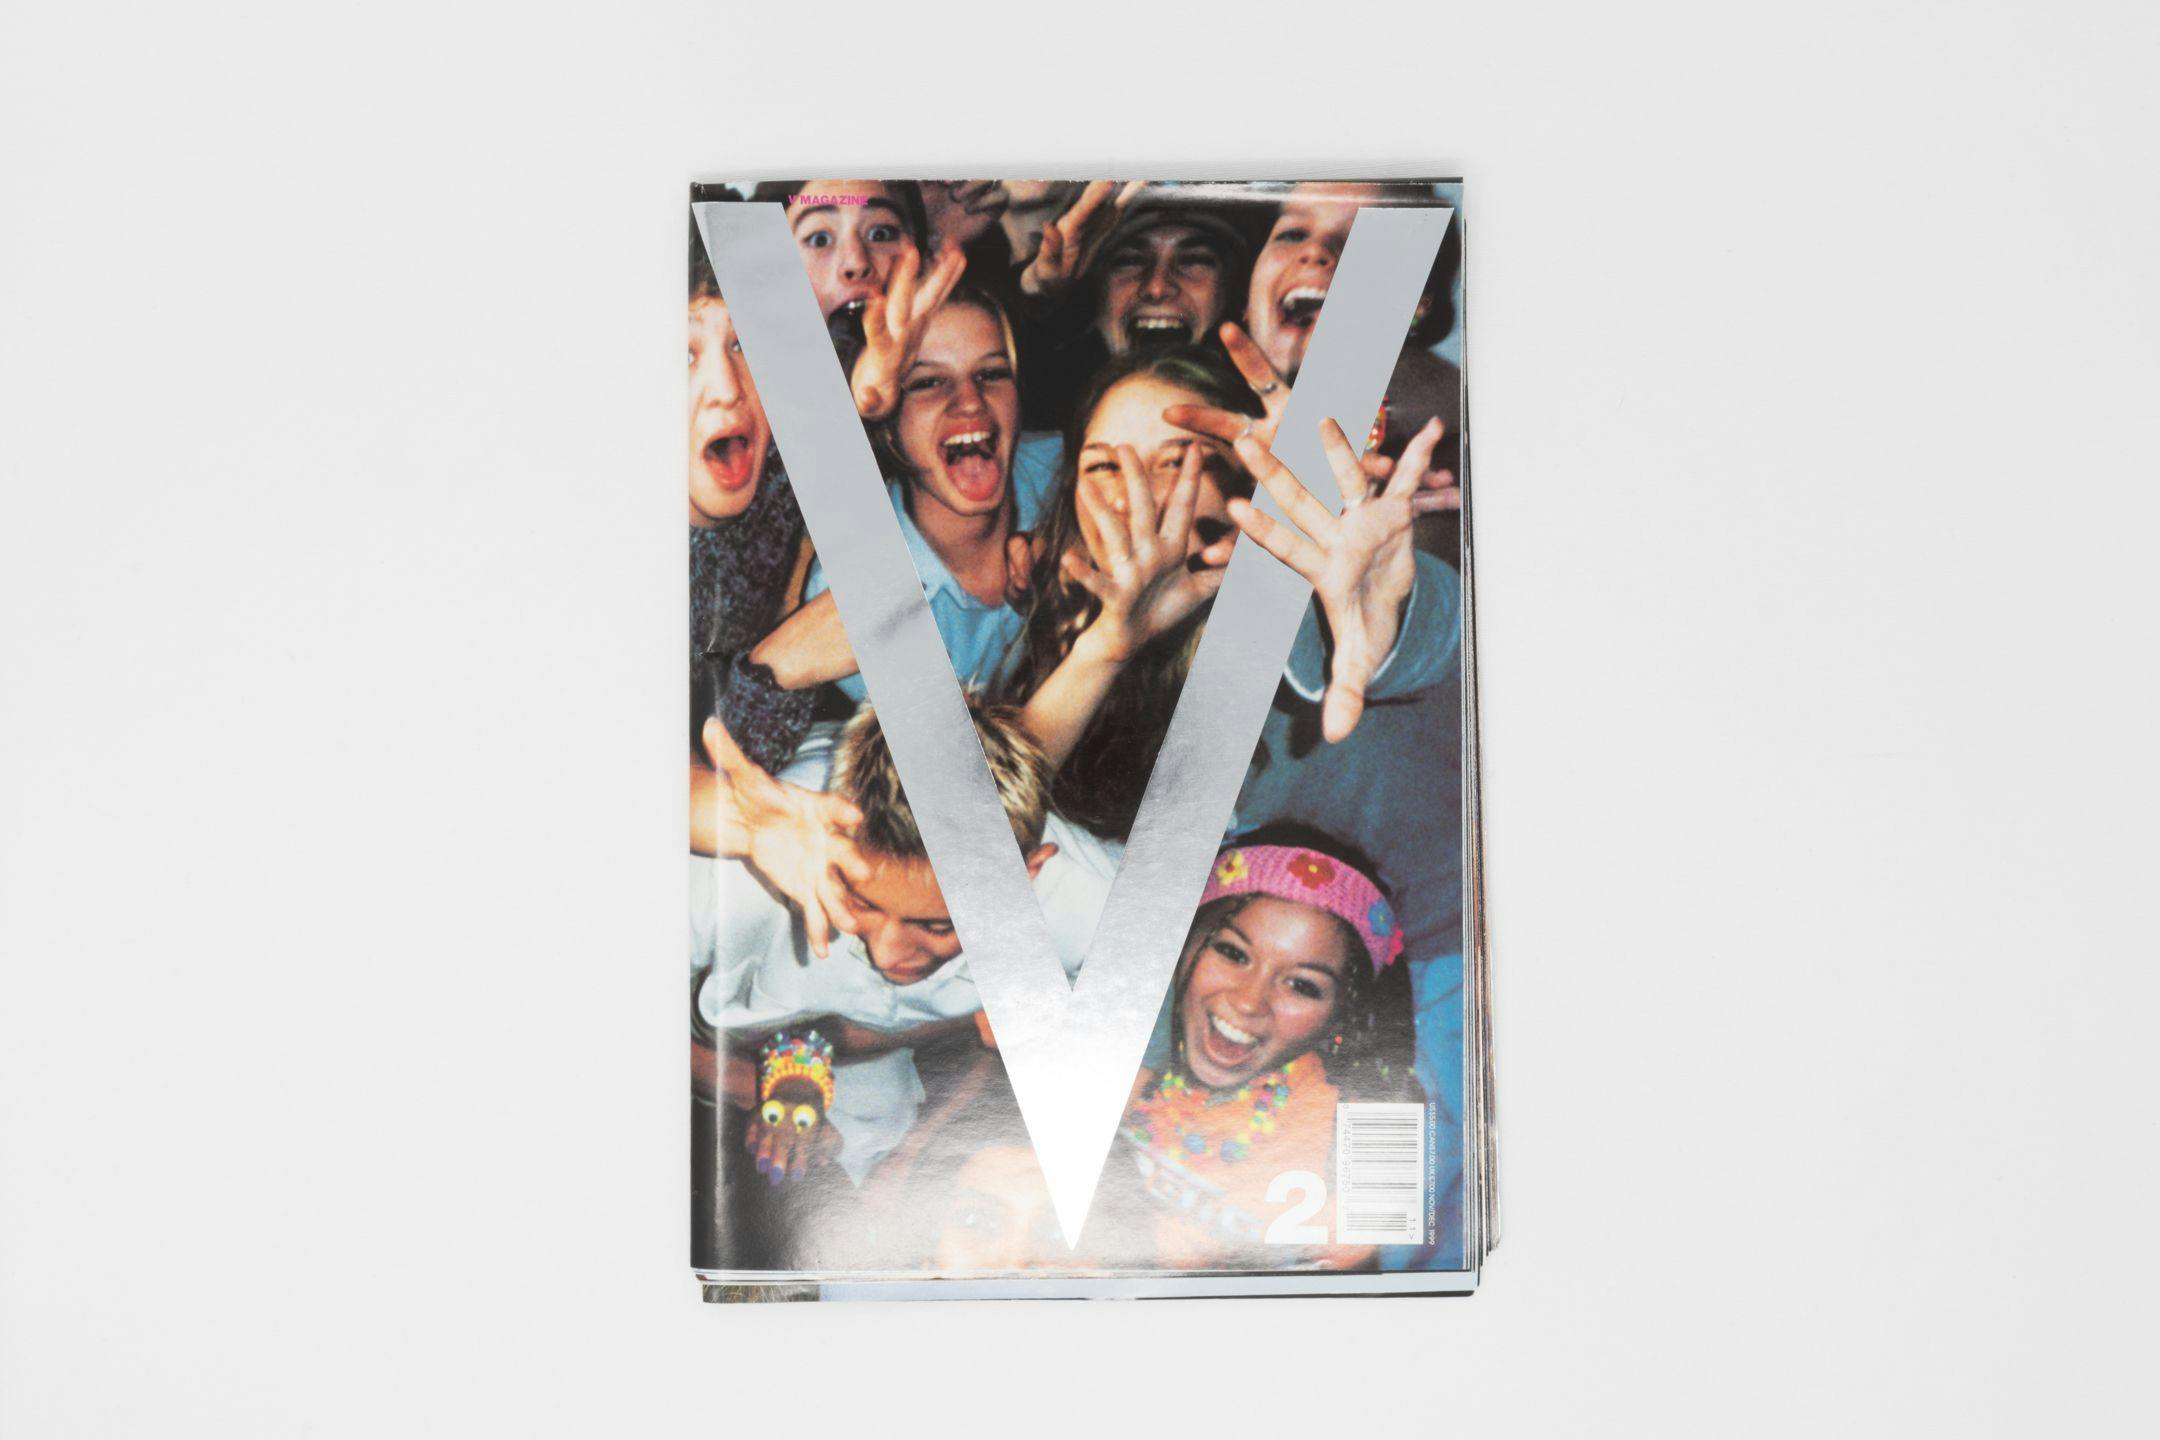 V Magazine Issue 2, "Generation V!"